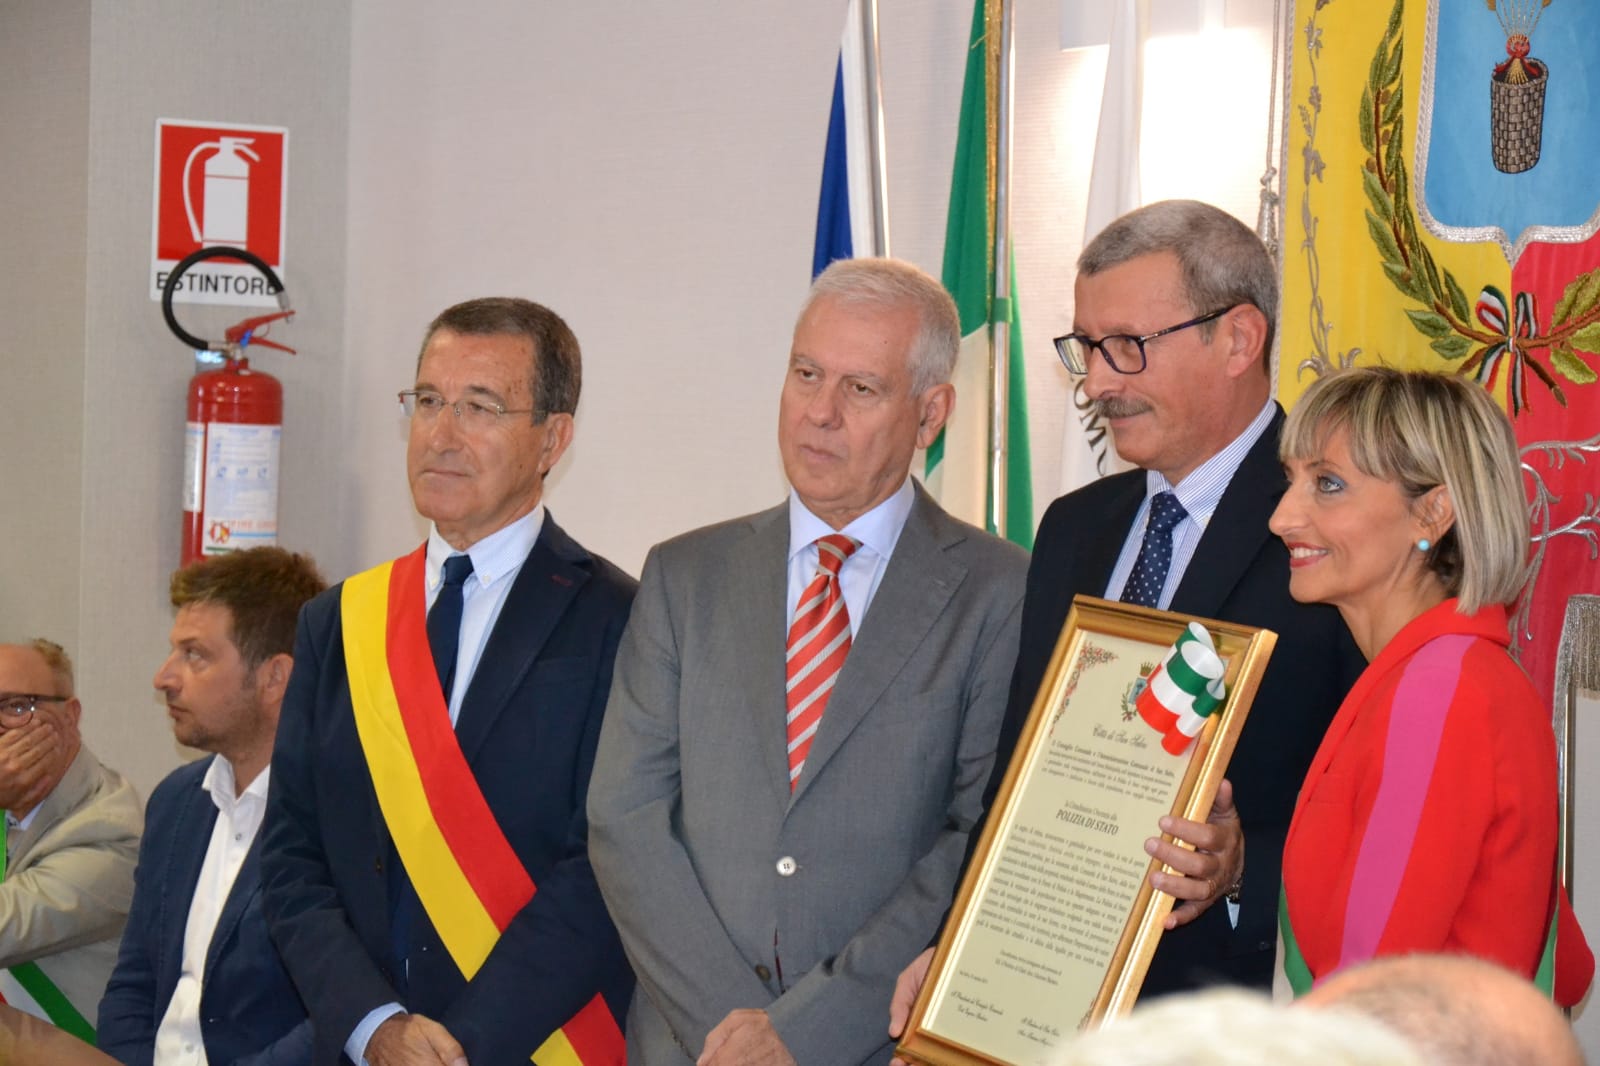 Il Comune di San Salvo conferisce la cittadinanza onoraria alla Polizia di Stato, all’Arma dei Carabinieri ed alla Guardia di Finanza